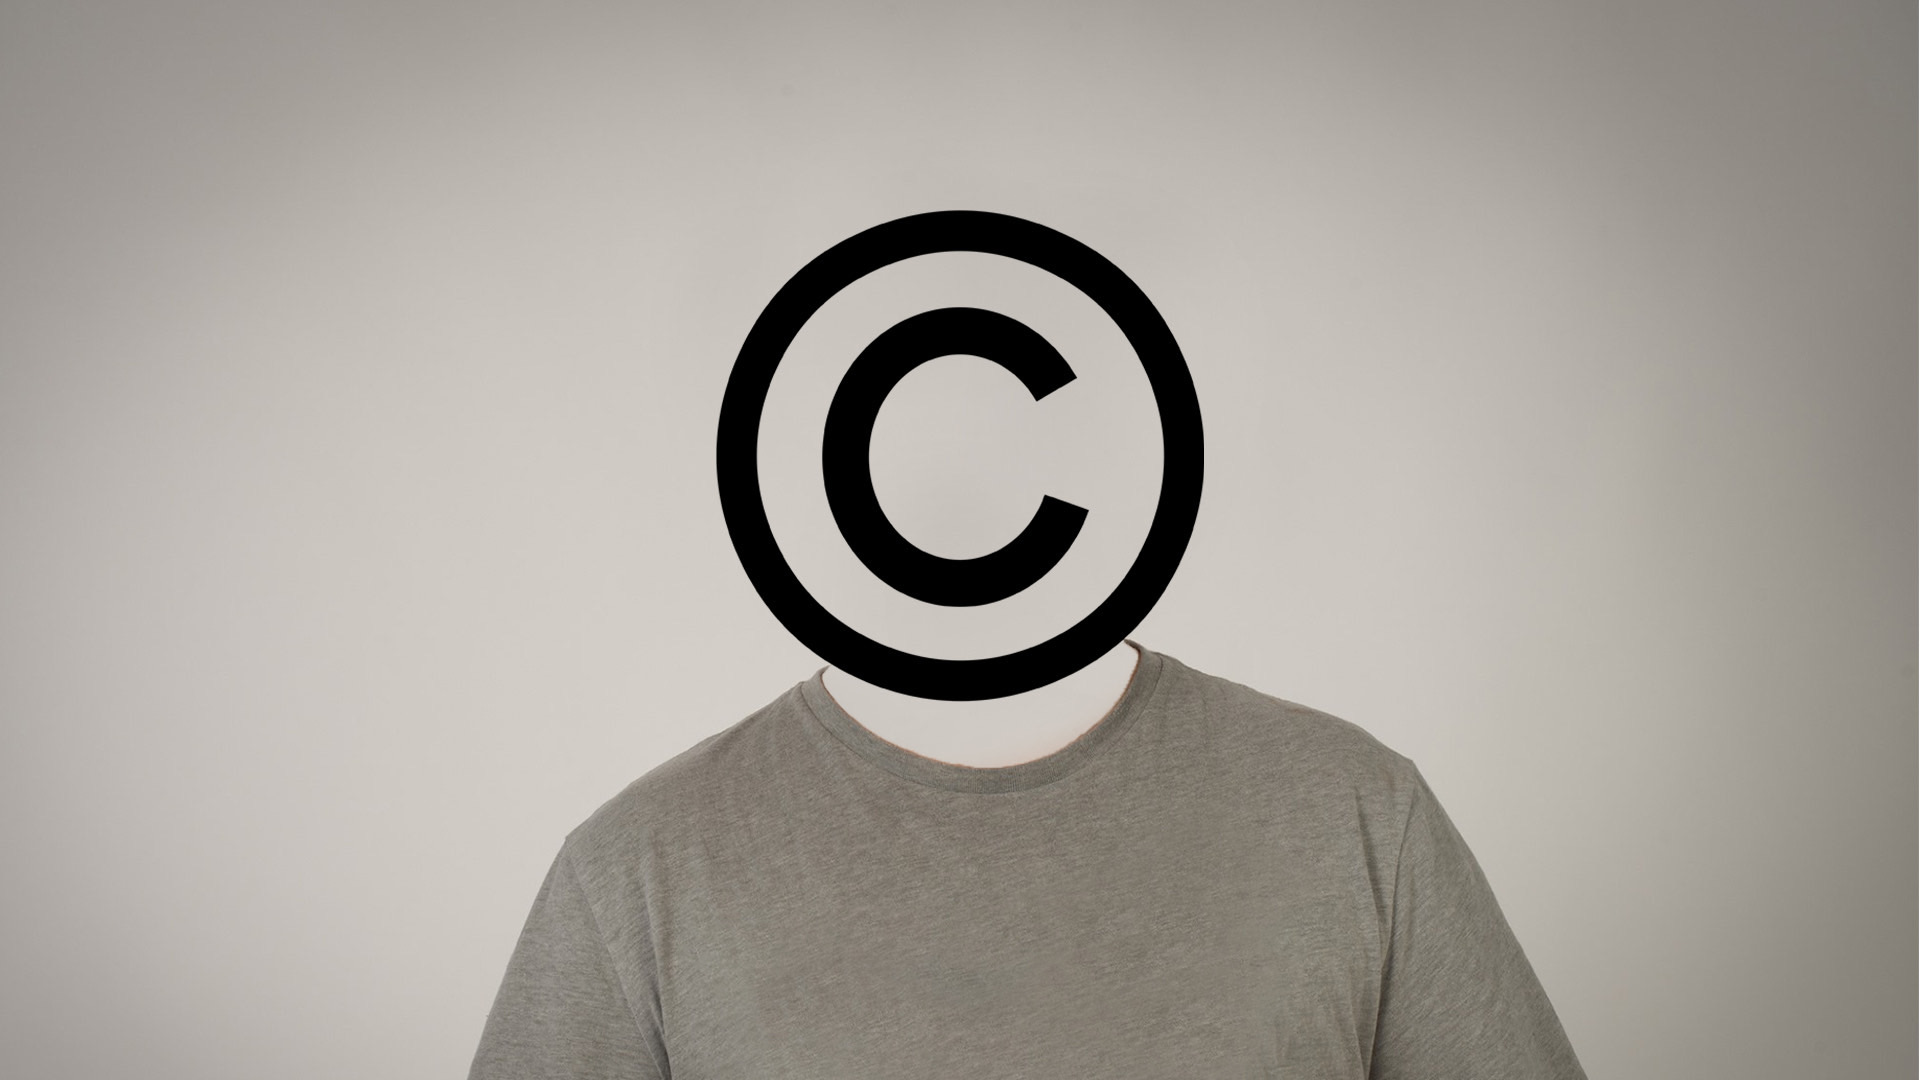 Copyright Header